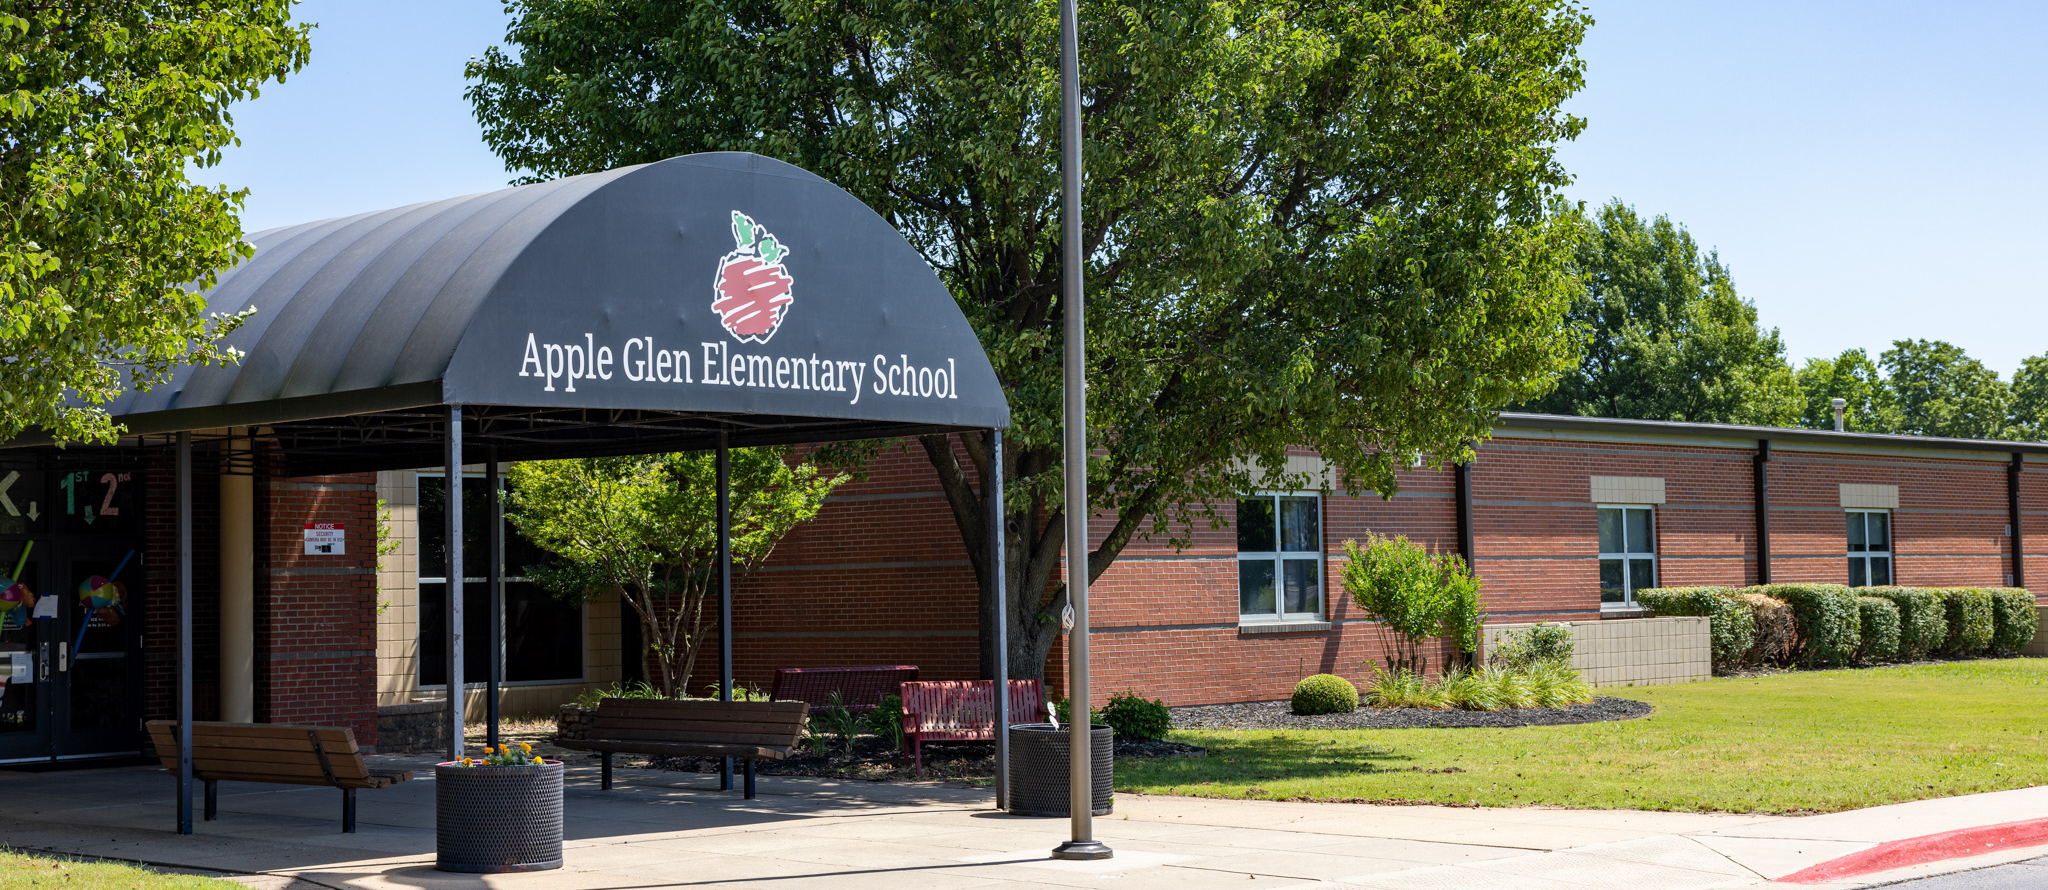 Apple Glen Elementary